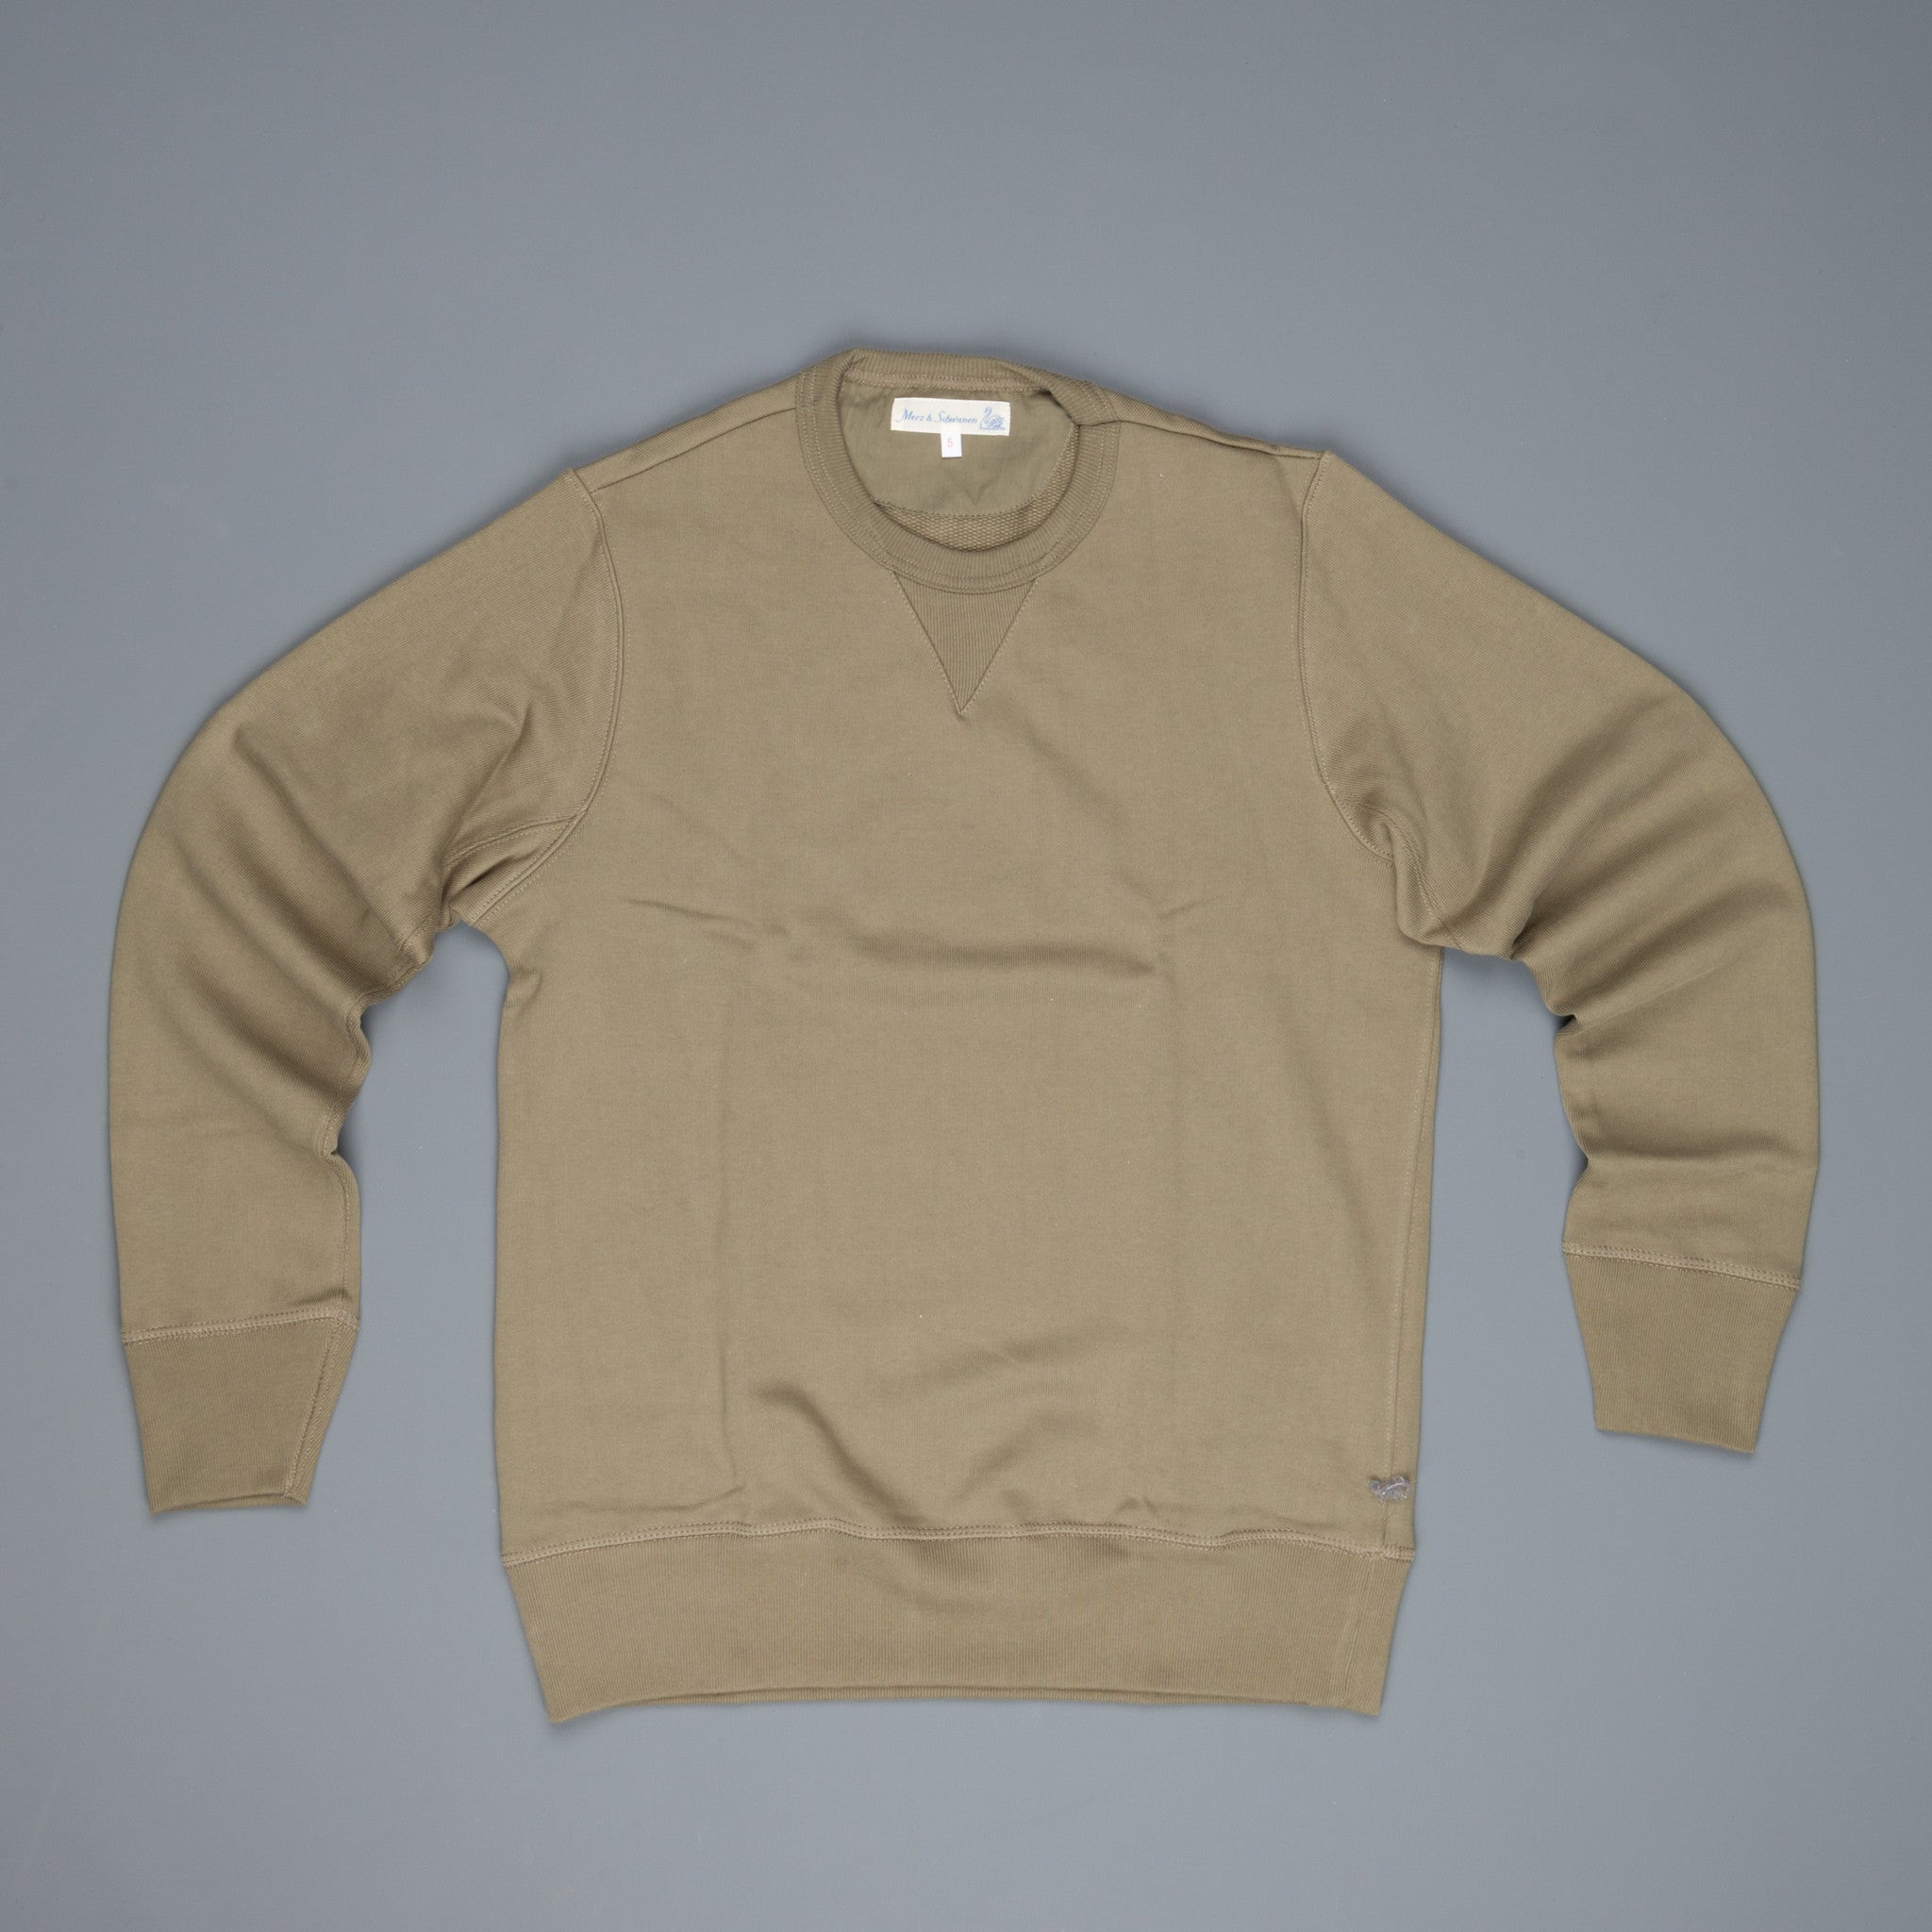 Merz B Schwanen 3s48 Strong fleece sweater Army